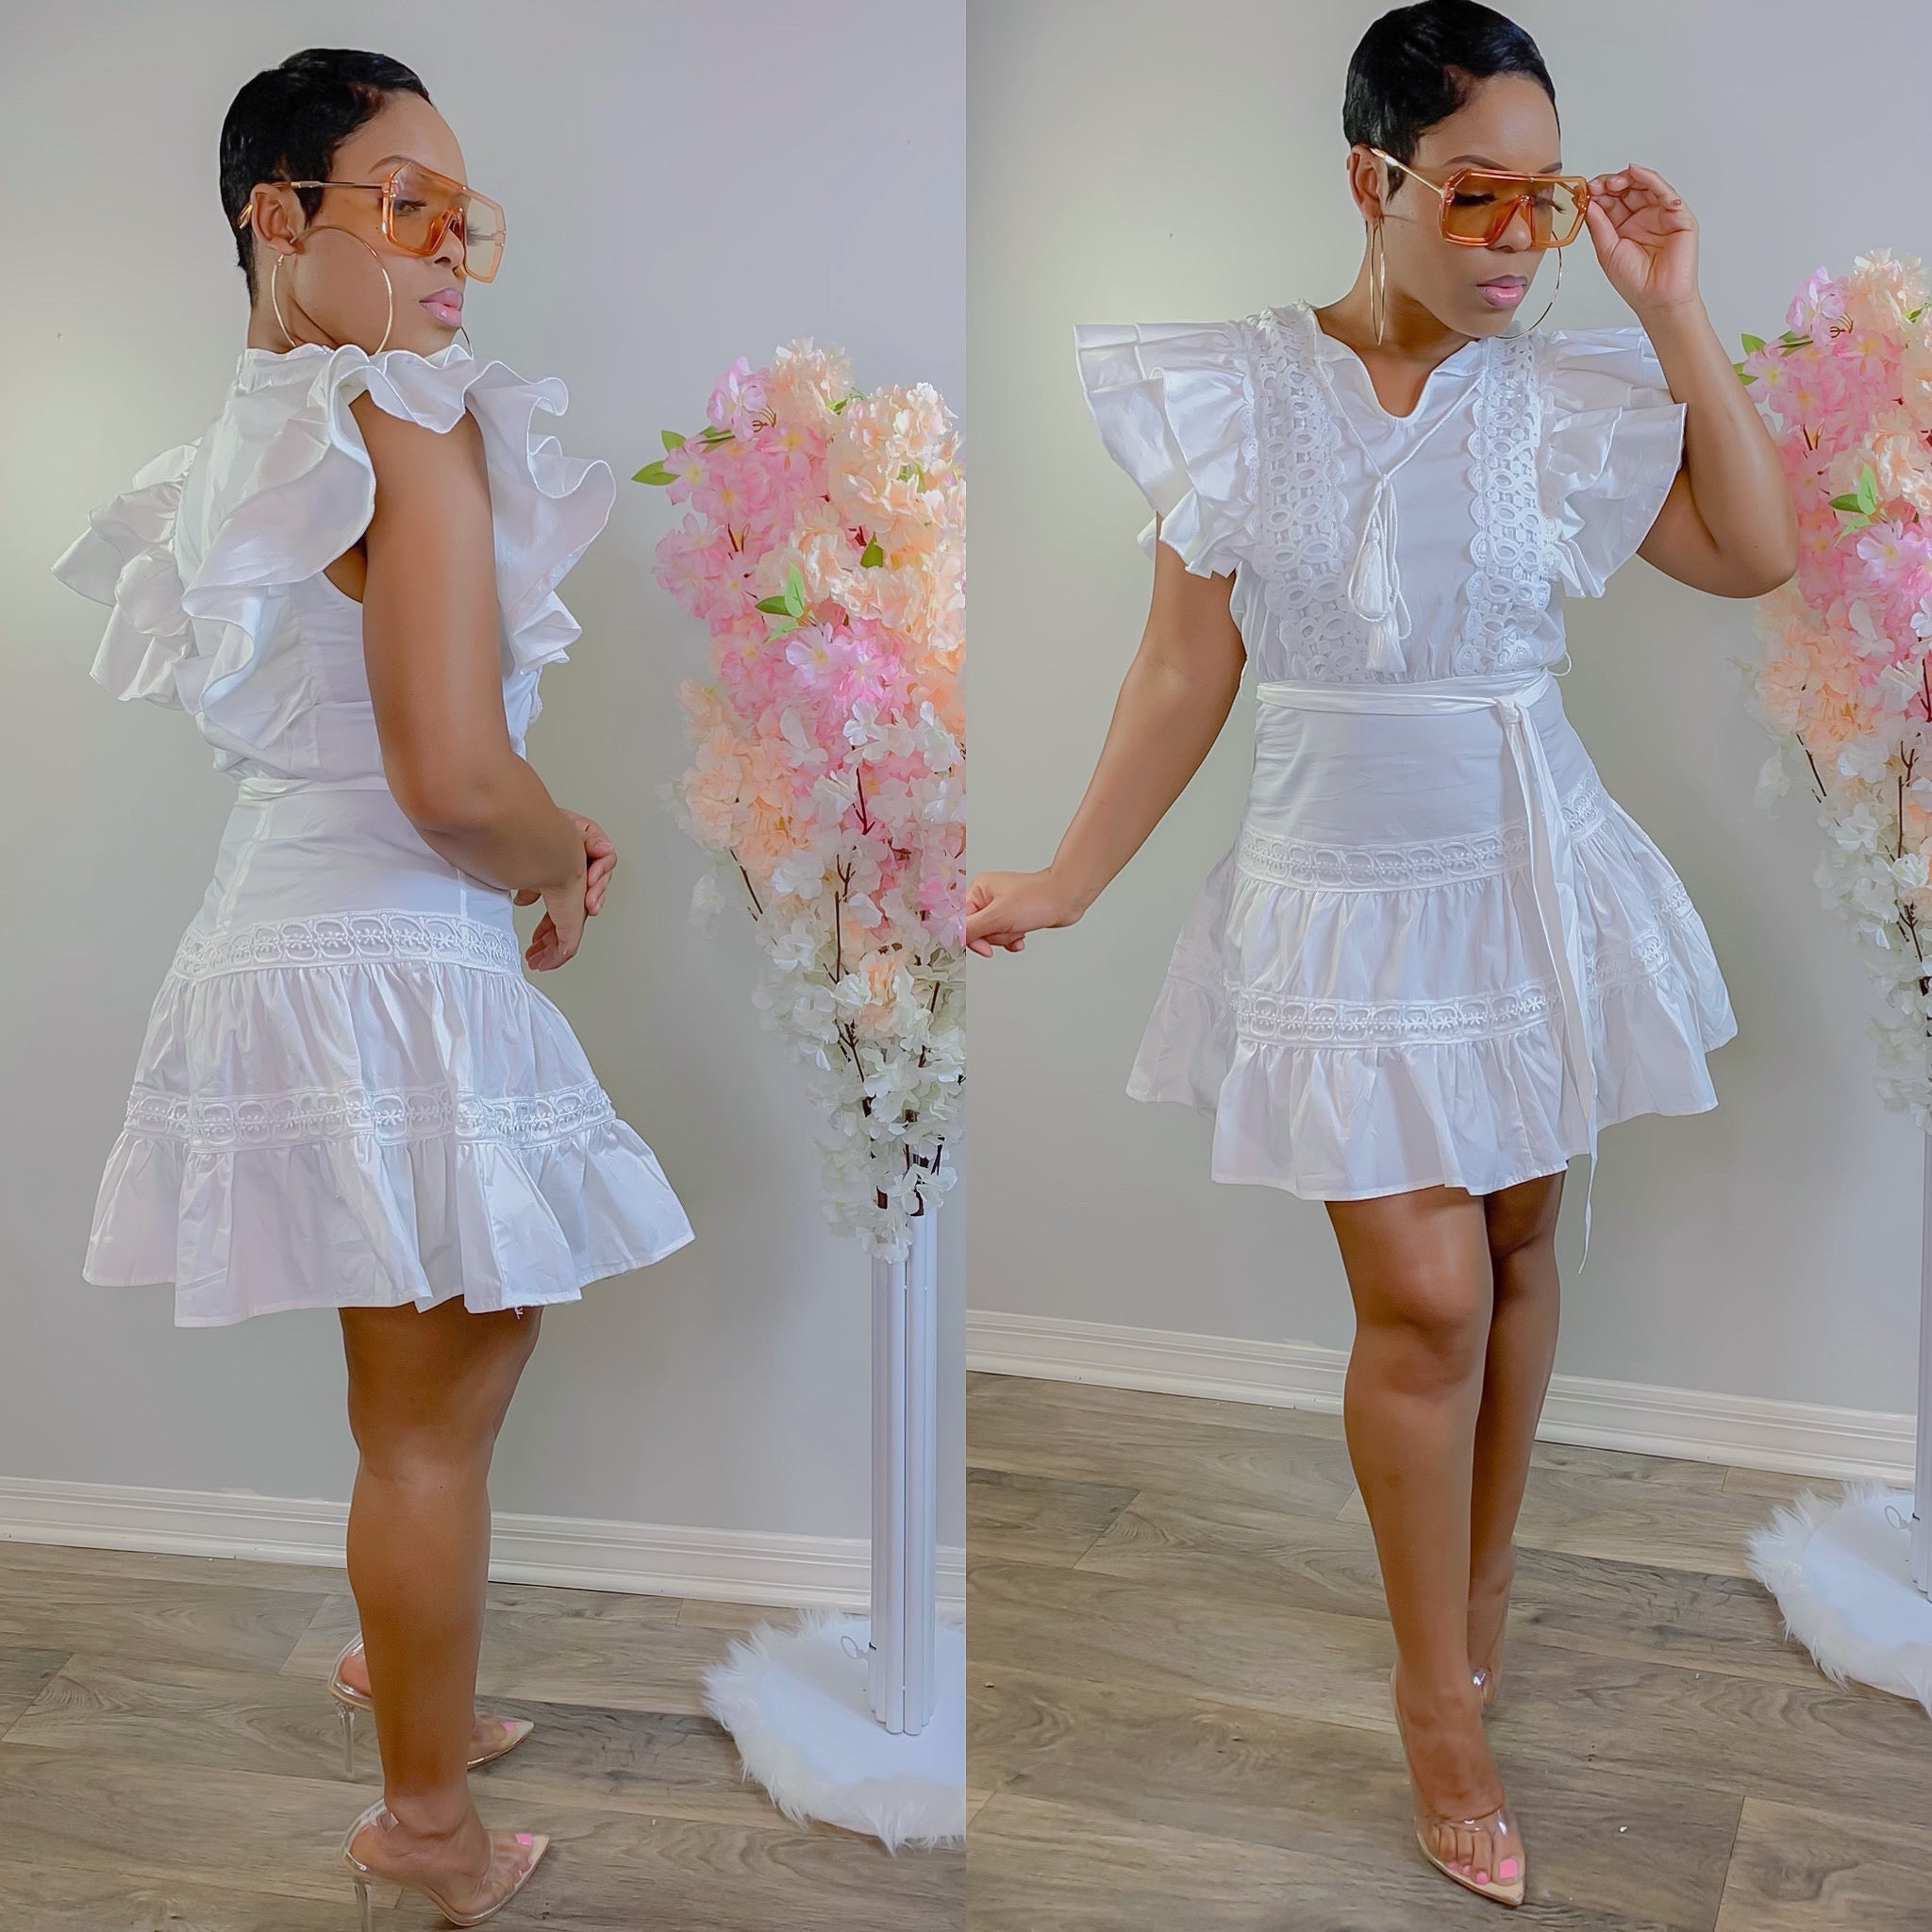 BELLA BABYDOLL DRESS – Fashion First Dolls